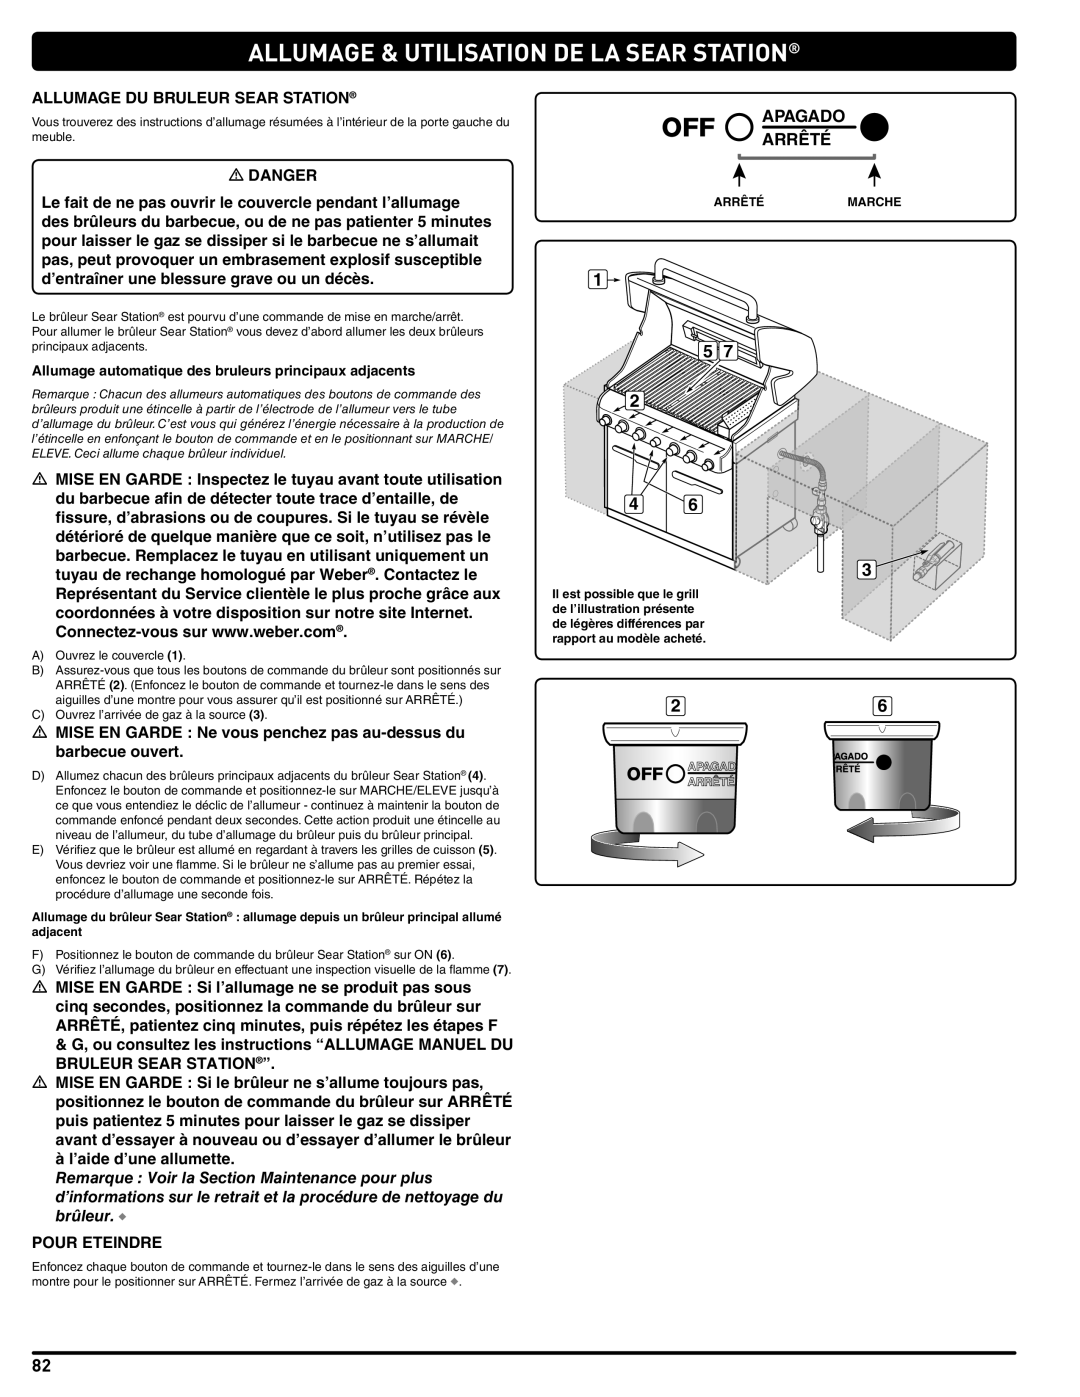 Weber 56576 manual Allumage & Utilisation De La Sear Station, Apagado Arrêté, Arrêtémarche 